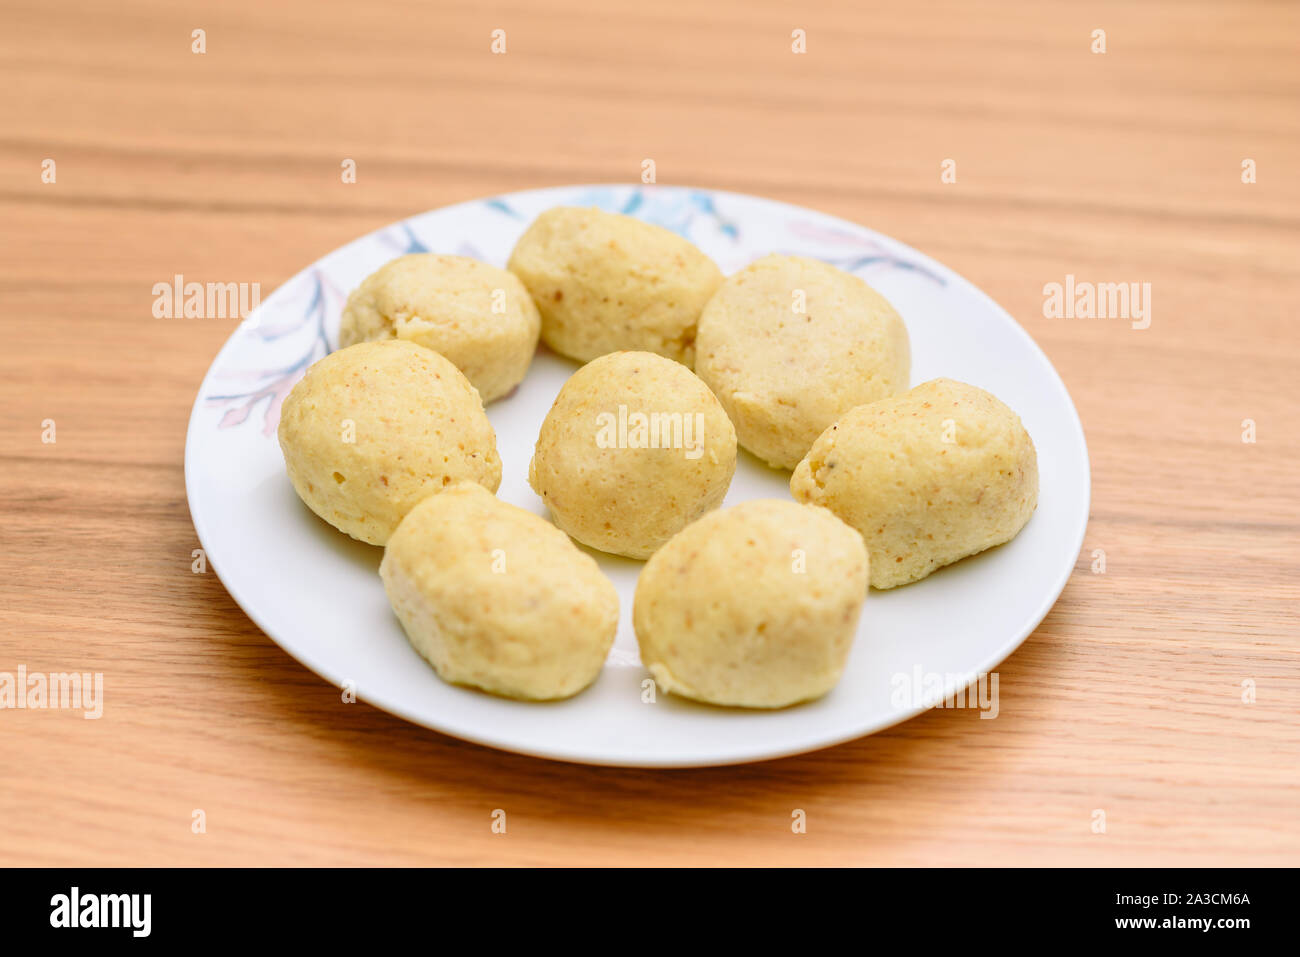 Balle kneidlach matzoh traditionnels pour la soupe.White platel avec foi matzo ball pour goûter la soupe bouillon de poulet tradition alimentaire pour la Pâque juive et de tous les jours. Banque D'Images